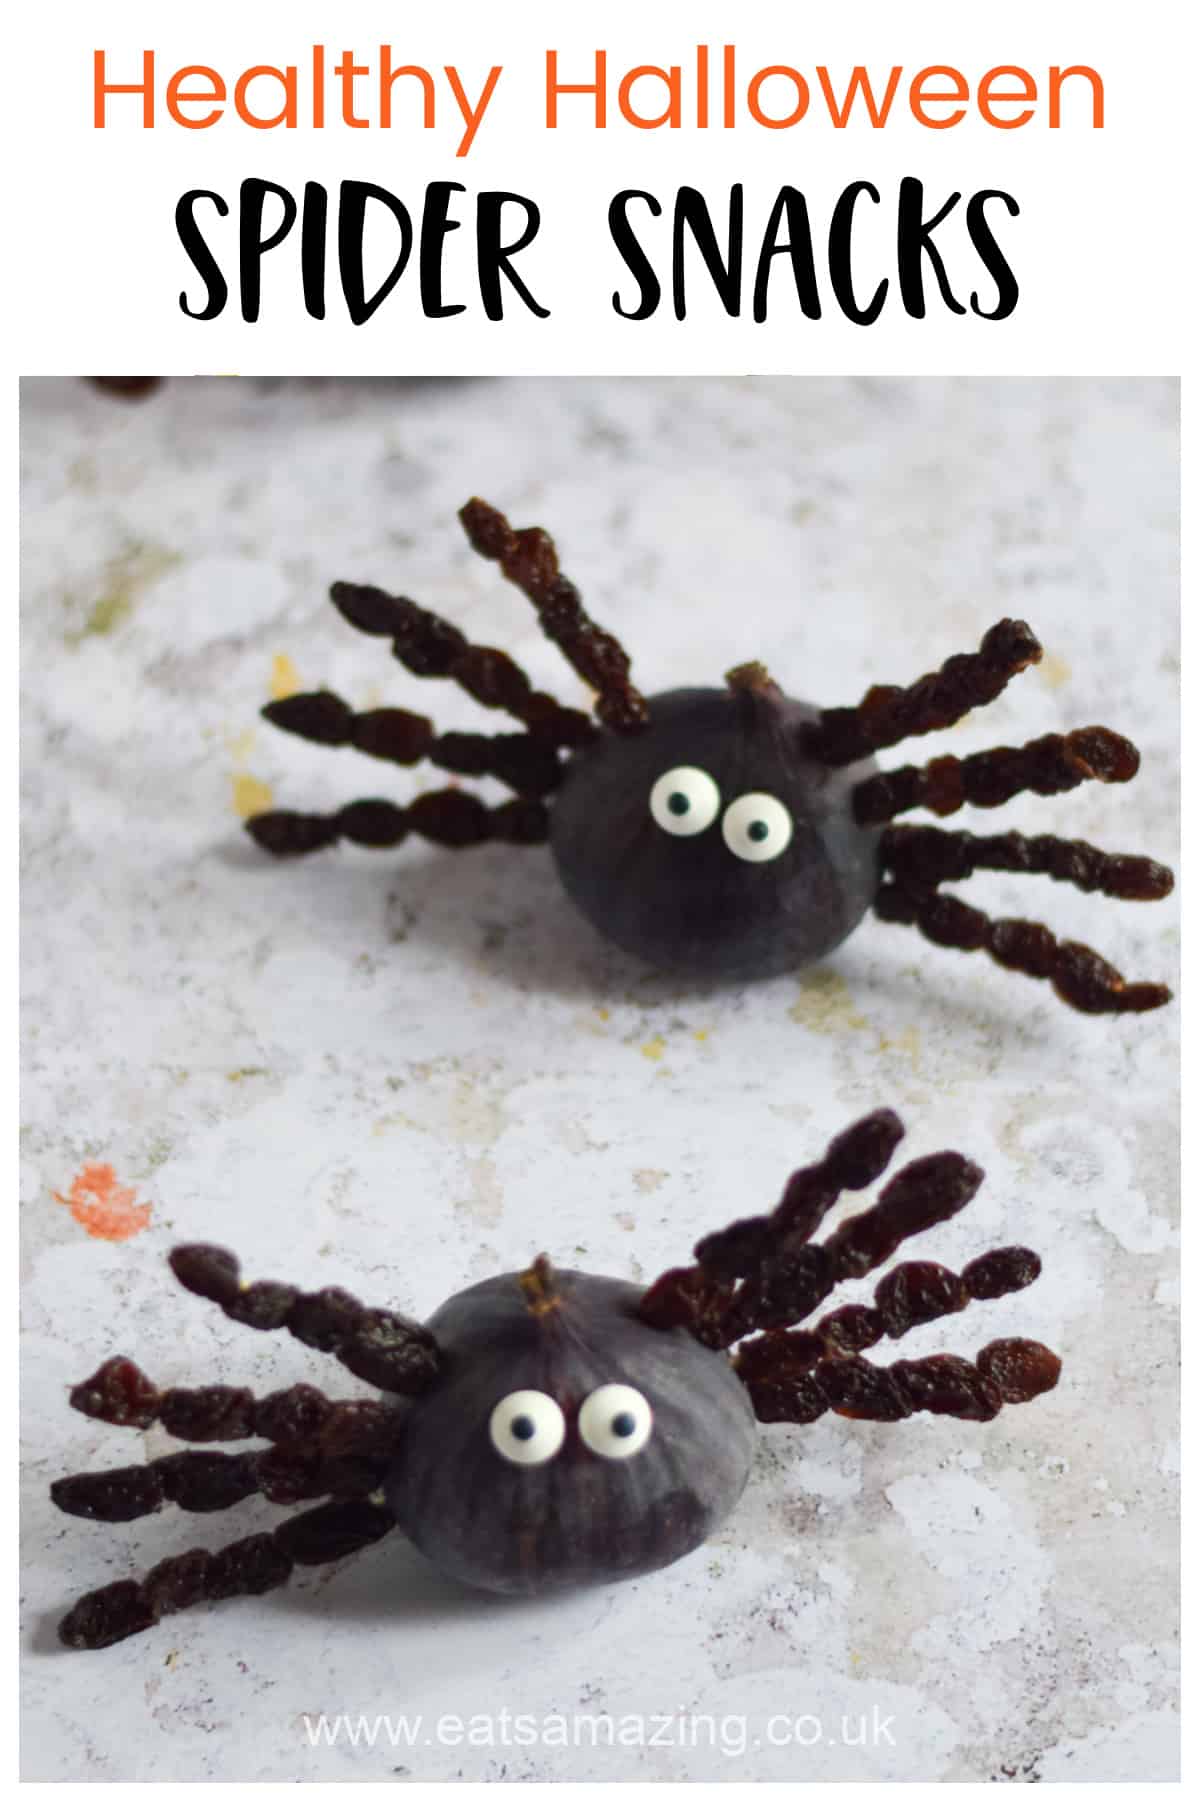 Divertida idea de comida saludable para la fiesta de Halloween: estas arañas de higos y pasas hacen una gran comida temática de araña fantasmagórica para los niños